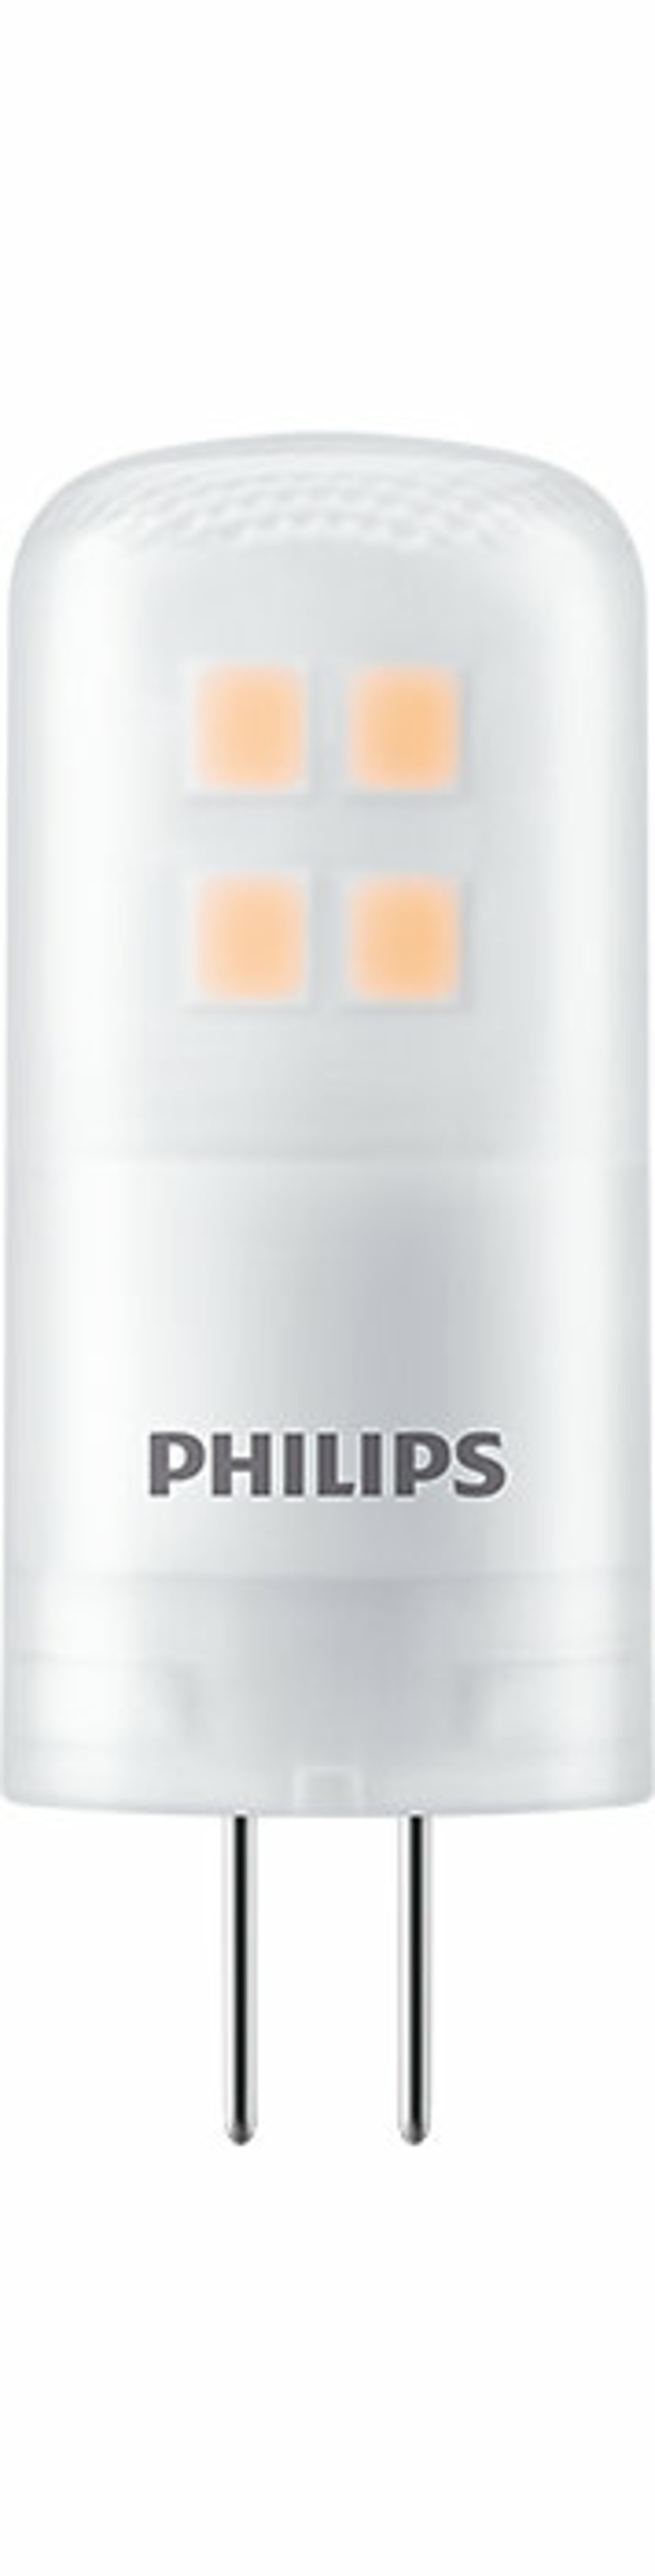 Philips CorePro LEDcapsuleLV 2.5-28W G4 830